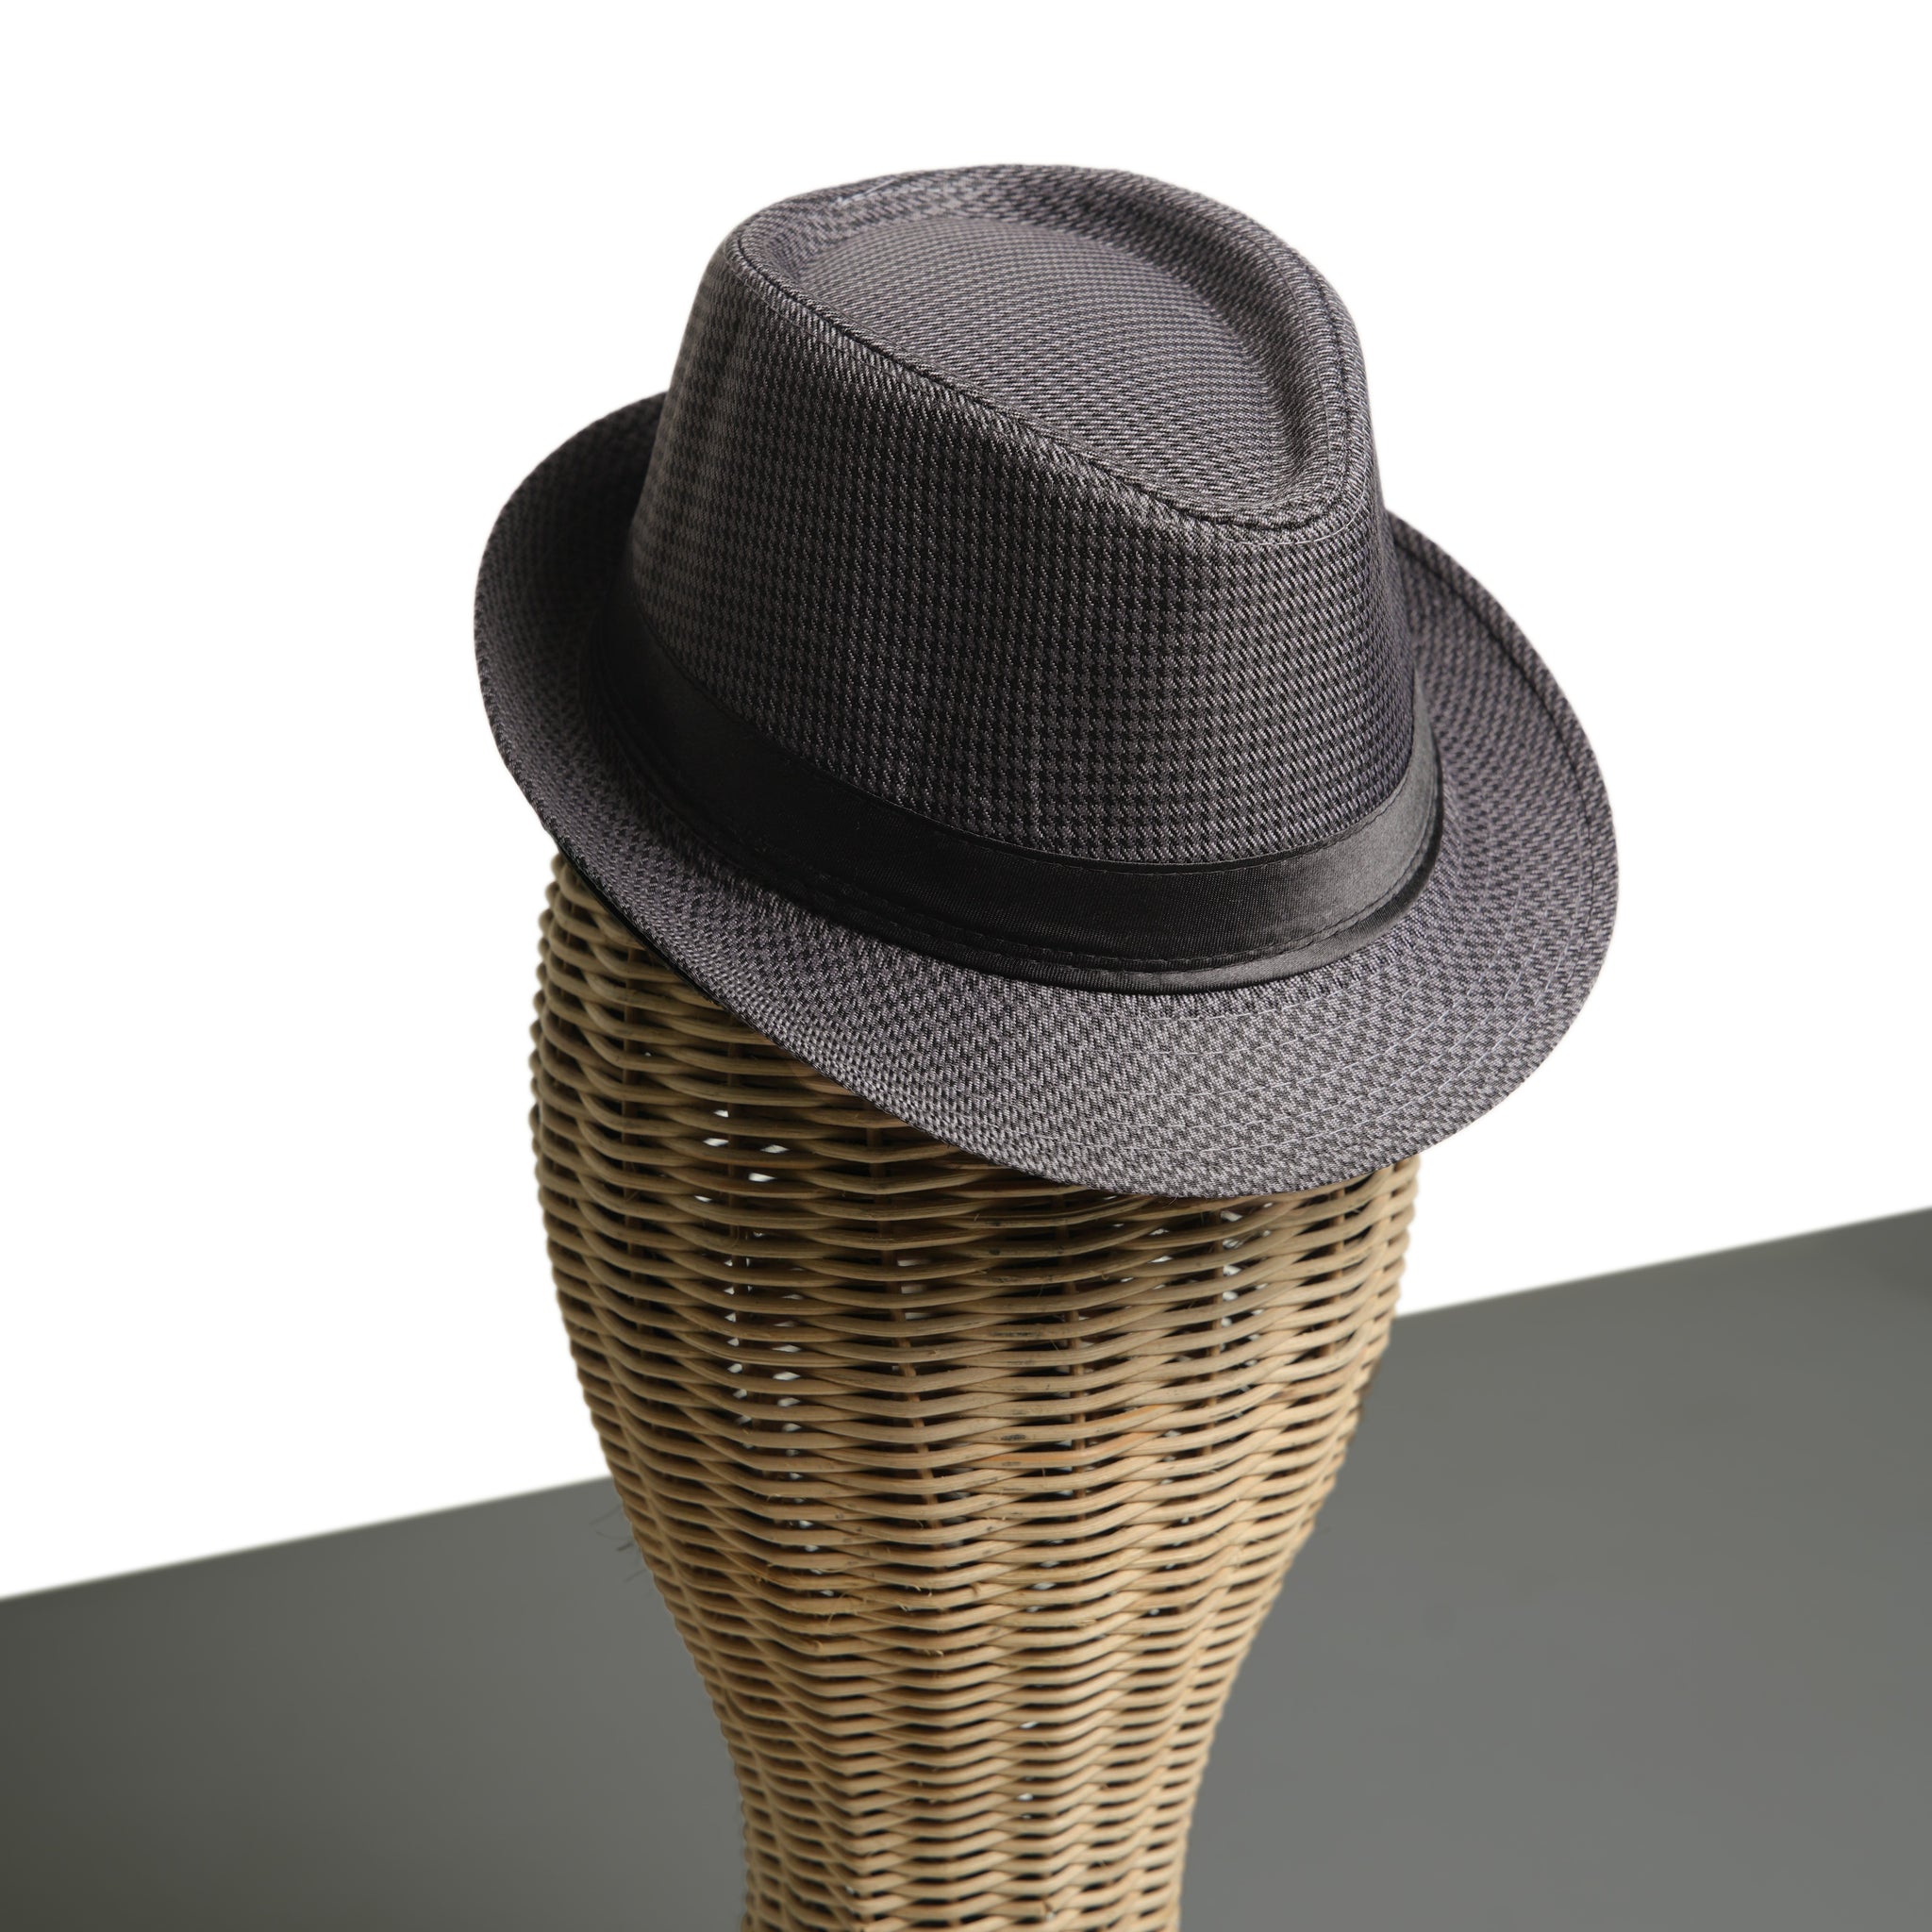 Chokore Fedora Hat in Houndstooth Pattern (Dark Grey)